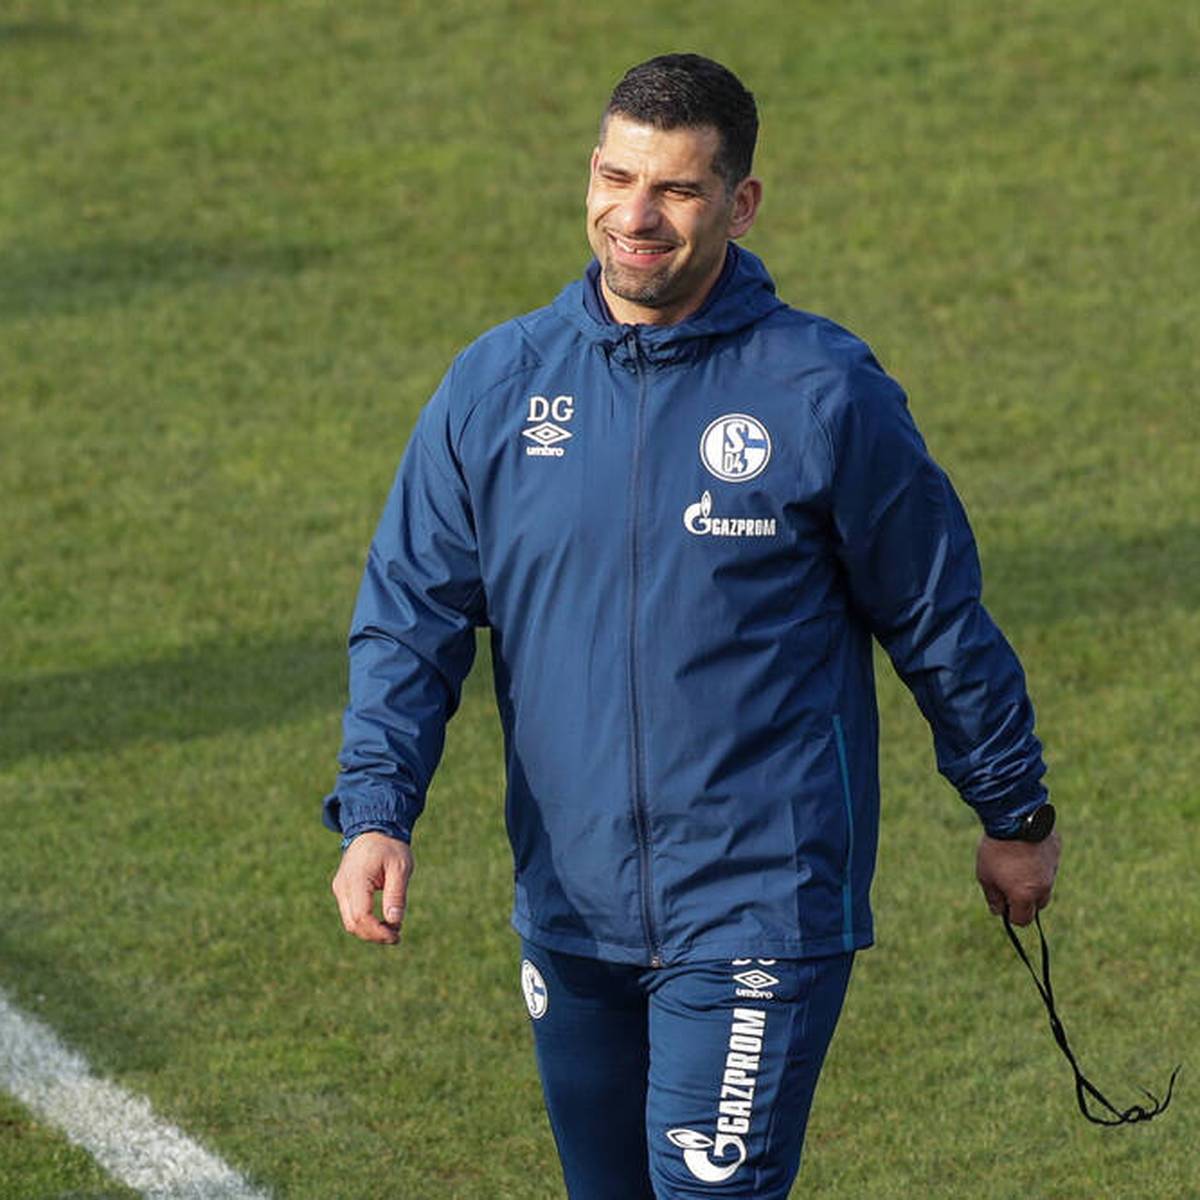 Schalke-Trainer Dimitrios Grammozis reagiert auf die Falschmeldung seines vermeintlichen Rauswurfes bei Schalke 04 - und nimmt es mit Humor.